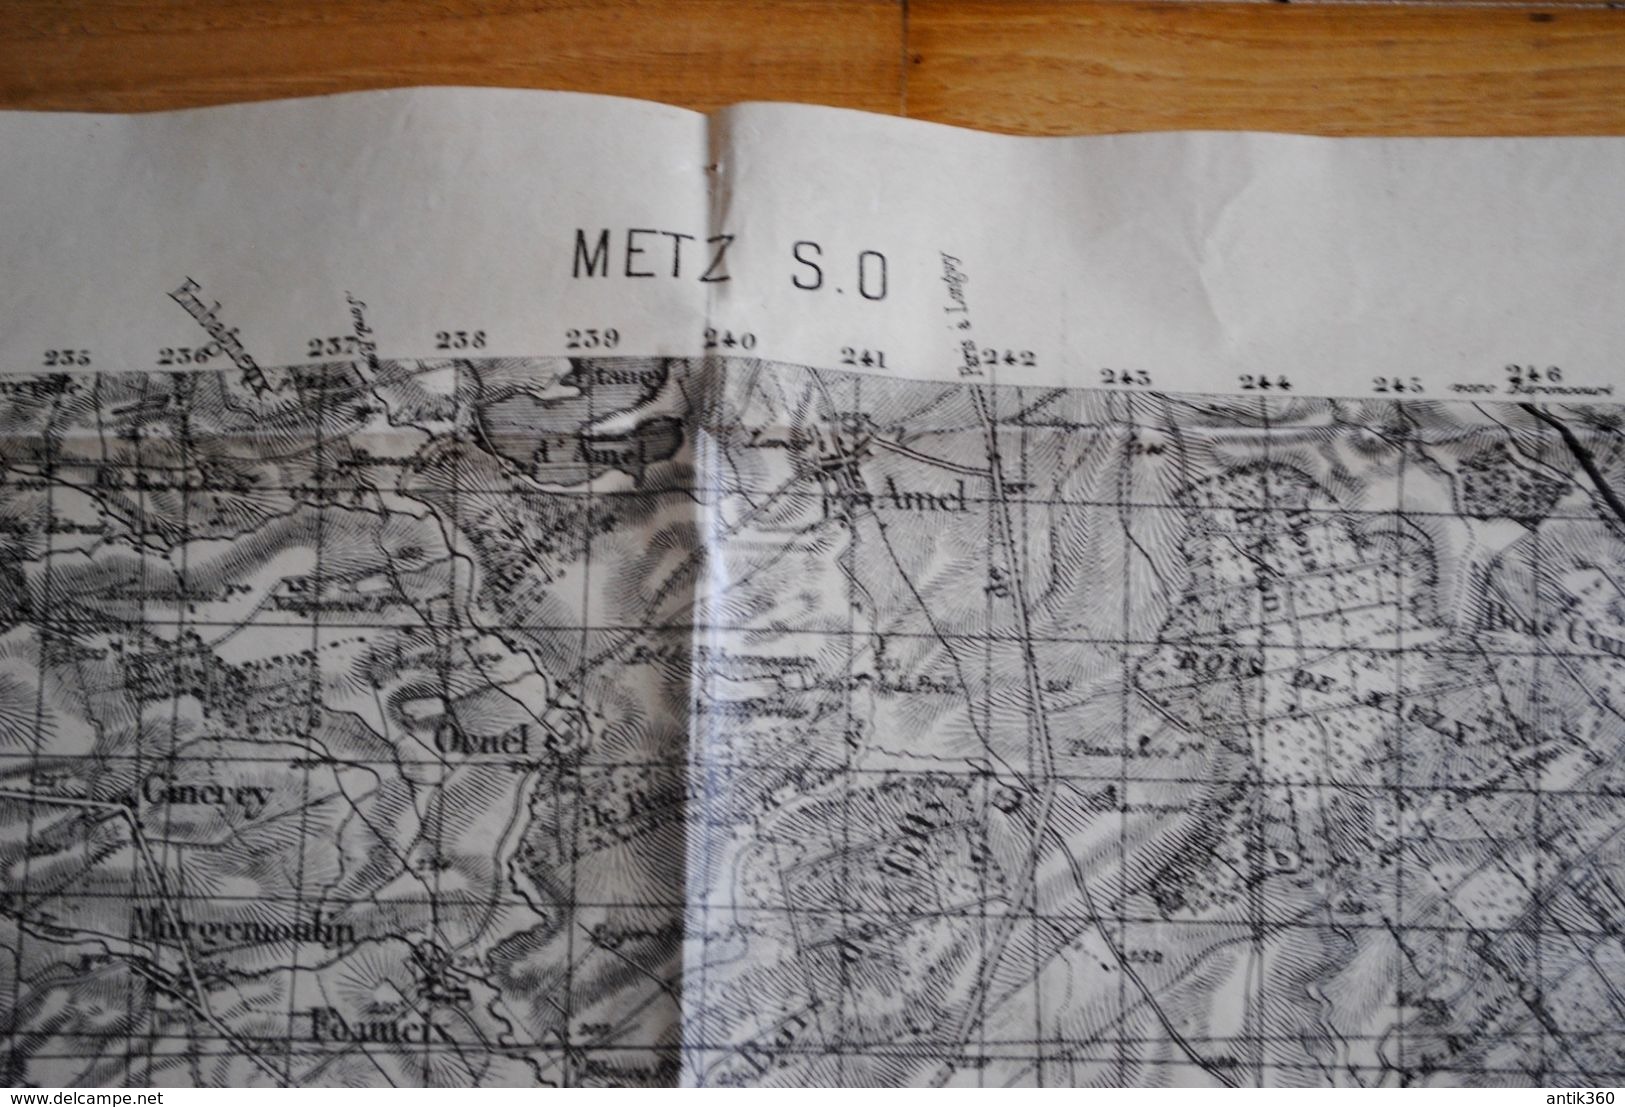 Lot de 4 anciennes cartes géographiques d'Etat Major des Armées 14-18 WW1 Verdun Nord Douai Arras Est Metz